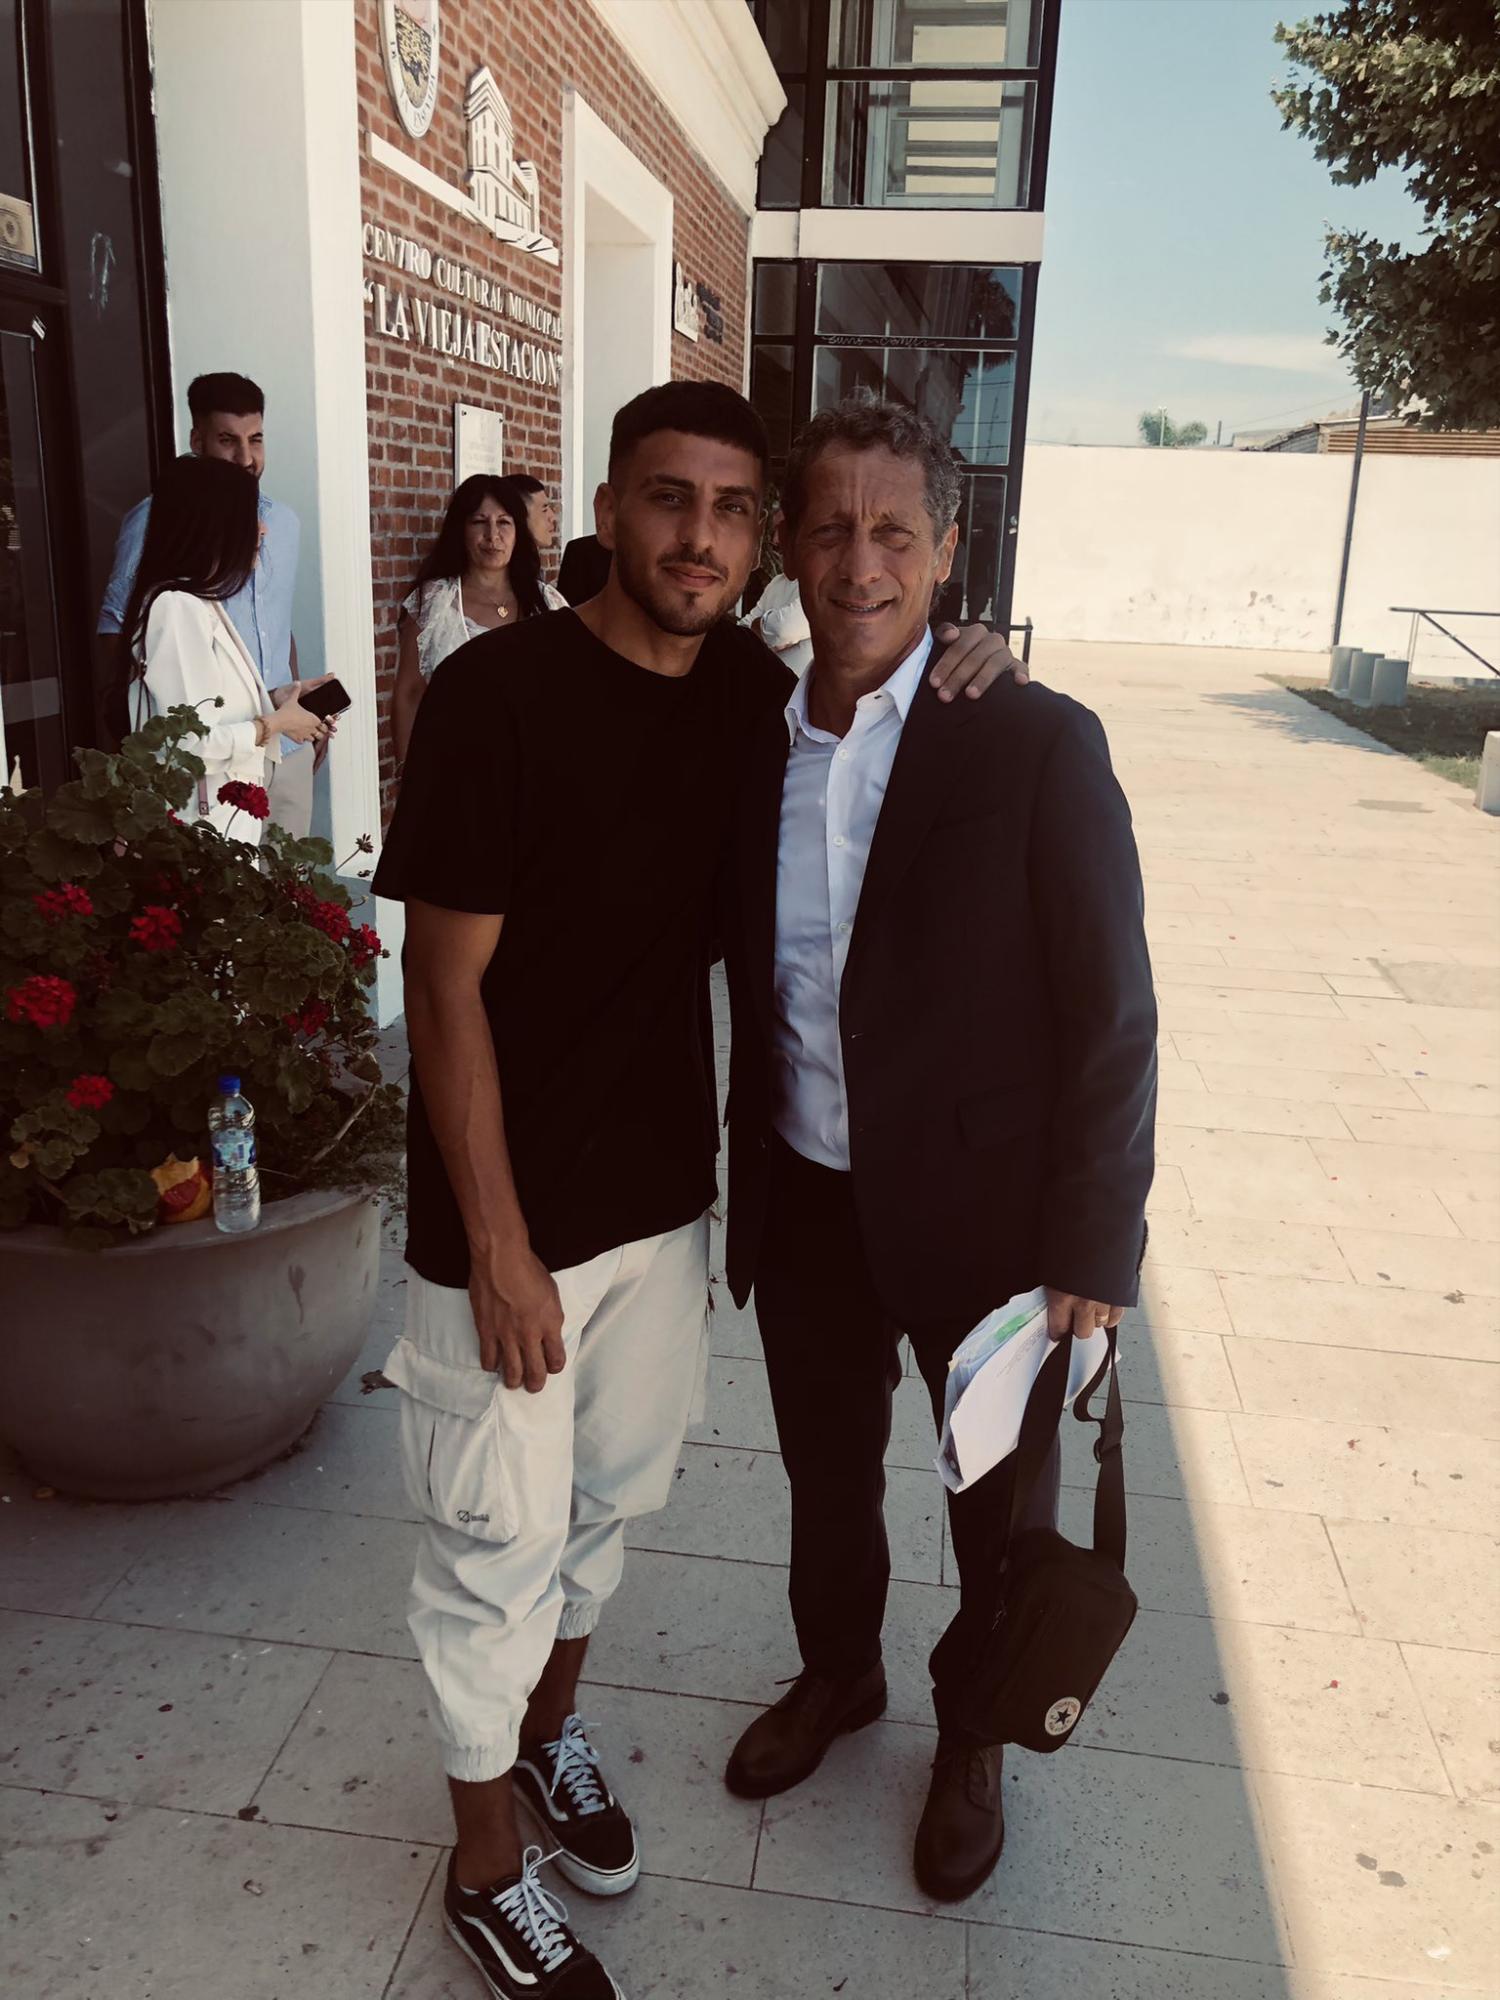 Gian Troglio colgó esta imagen con su papá tras la boda.